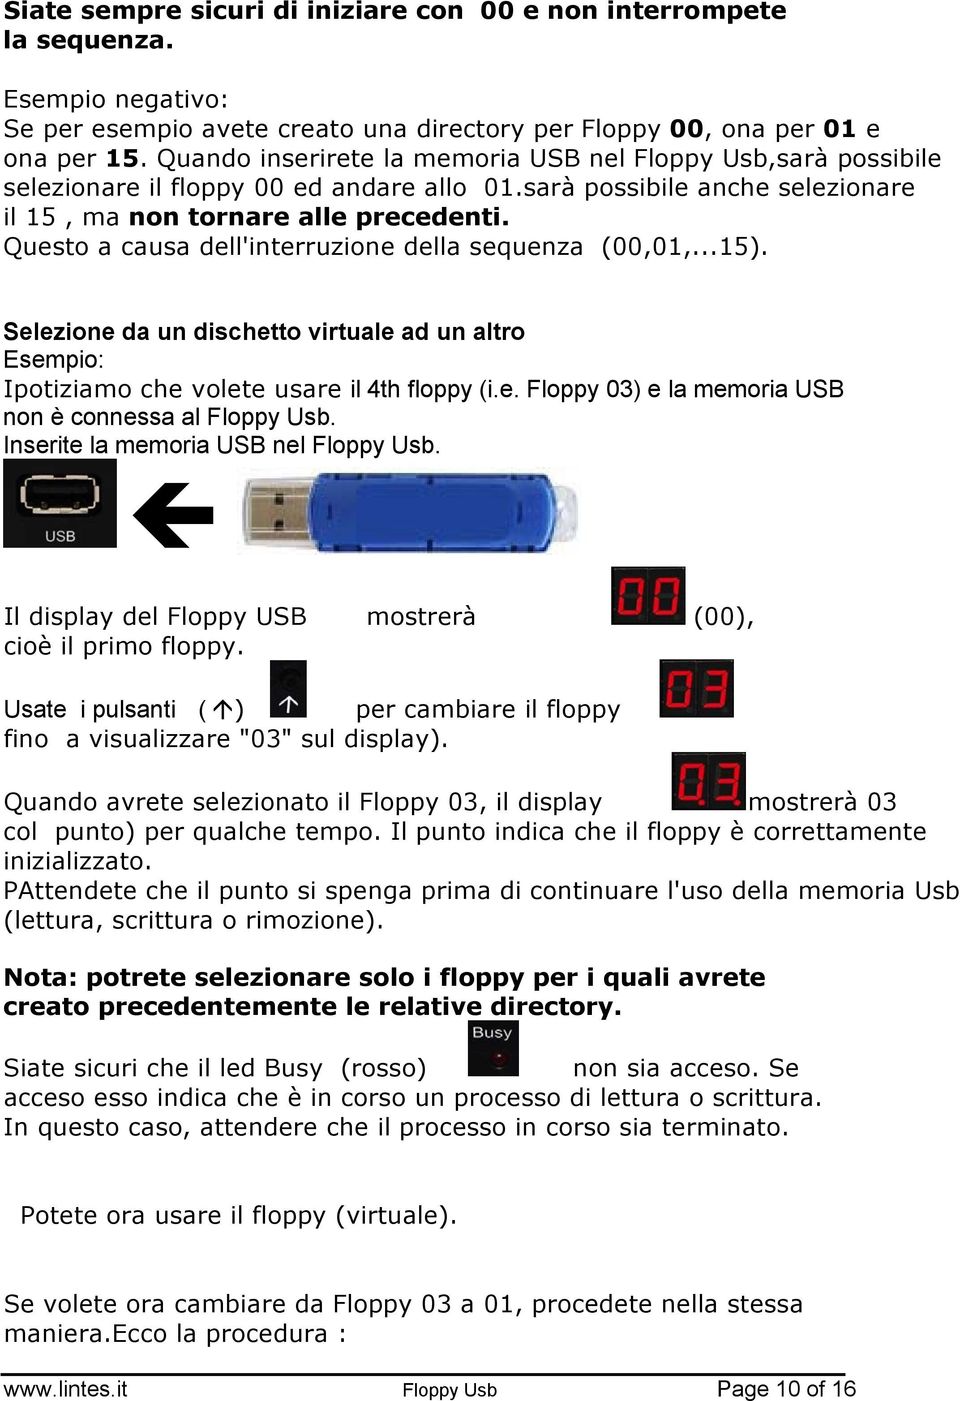 Questo a causa dell'interruzione della sequenza (00,01,...15). Selezione da un dischetto virtuale ad un altro Esempio: Ipotiziamo che volete usare il 4th floppy (i.e. Floppy 03) e la memoria USB non è connessa al Floppy Usb.